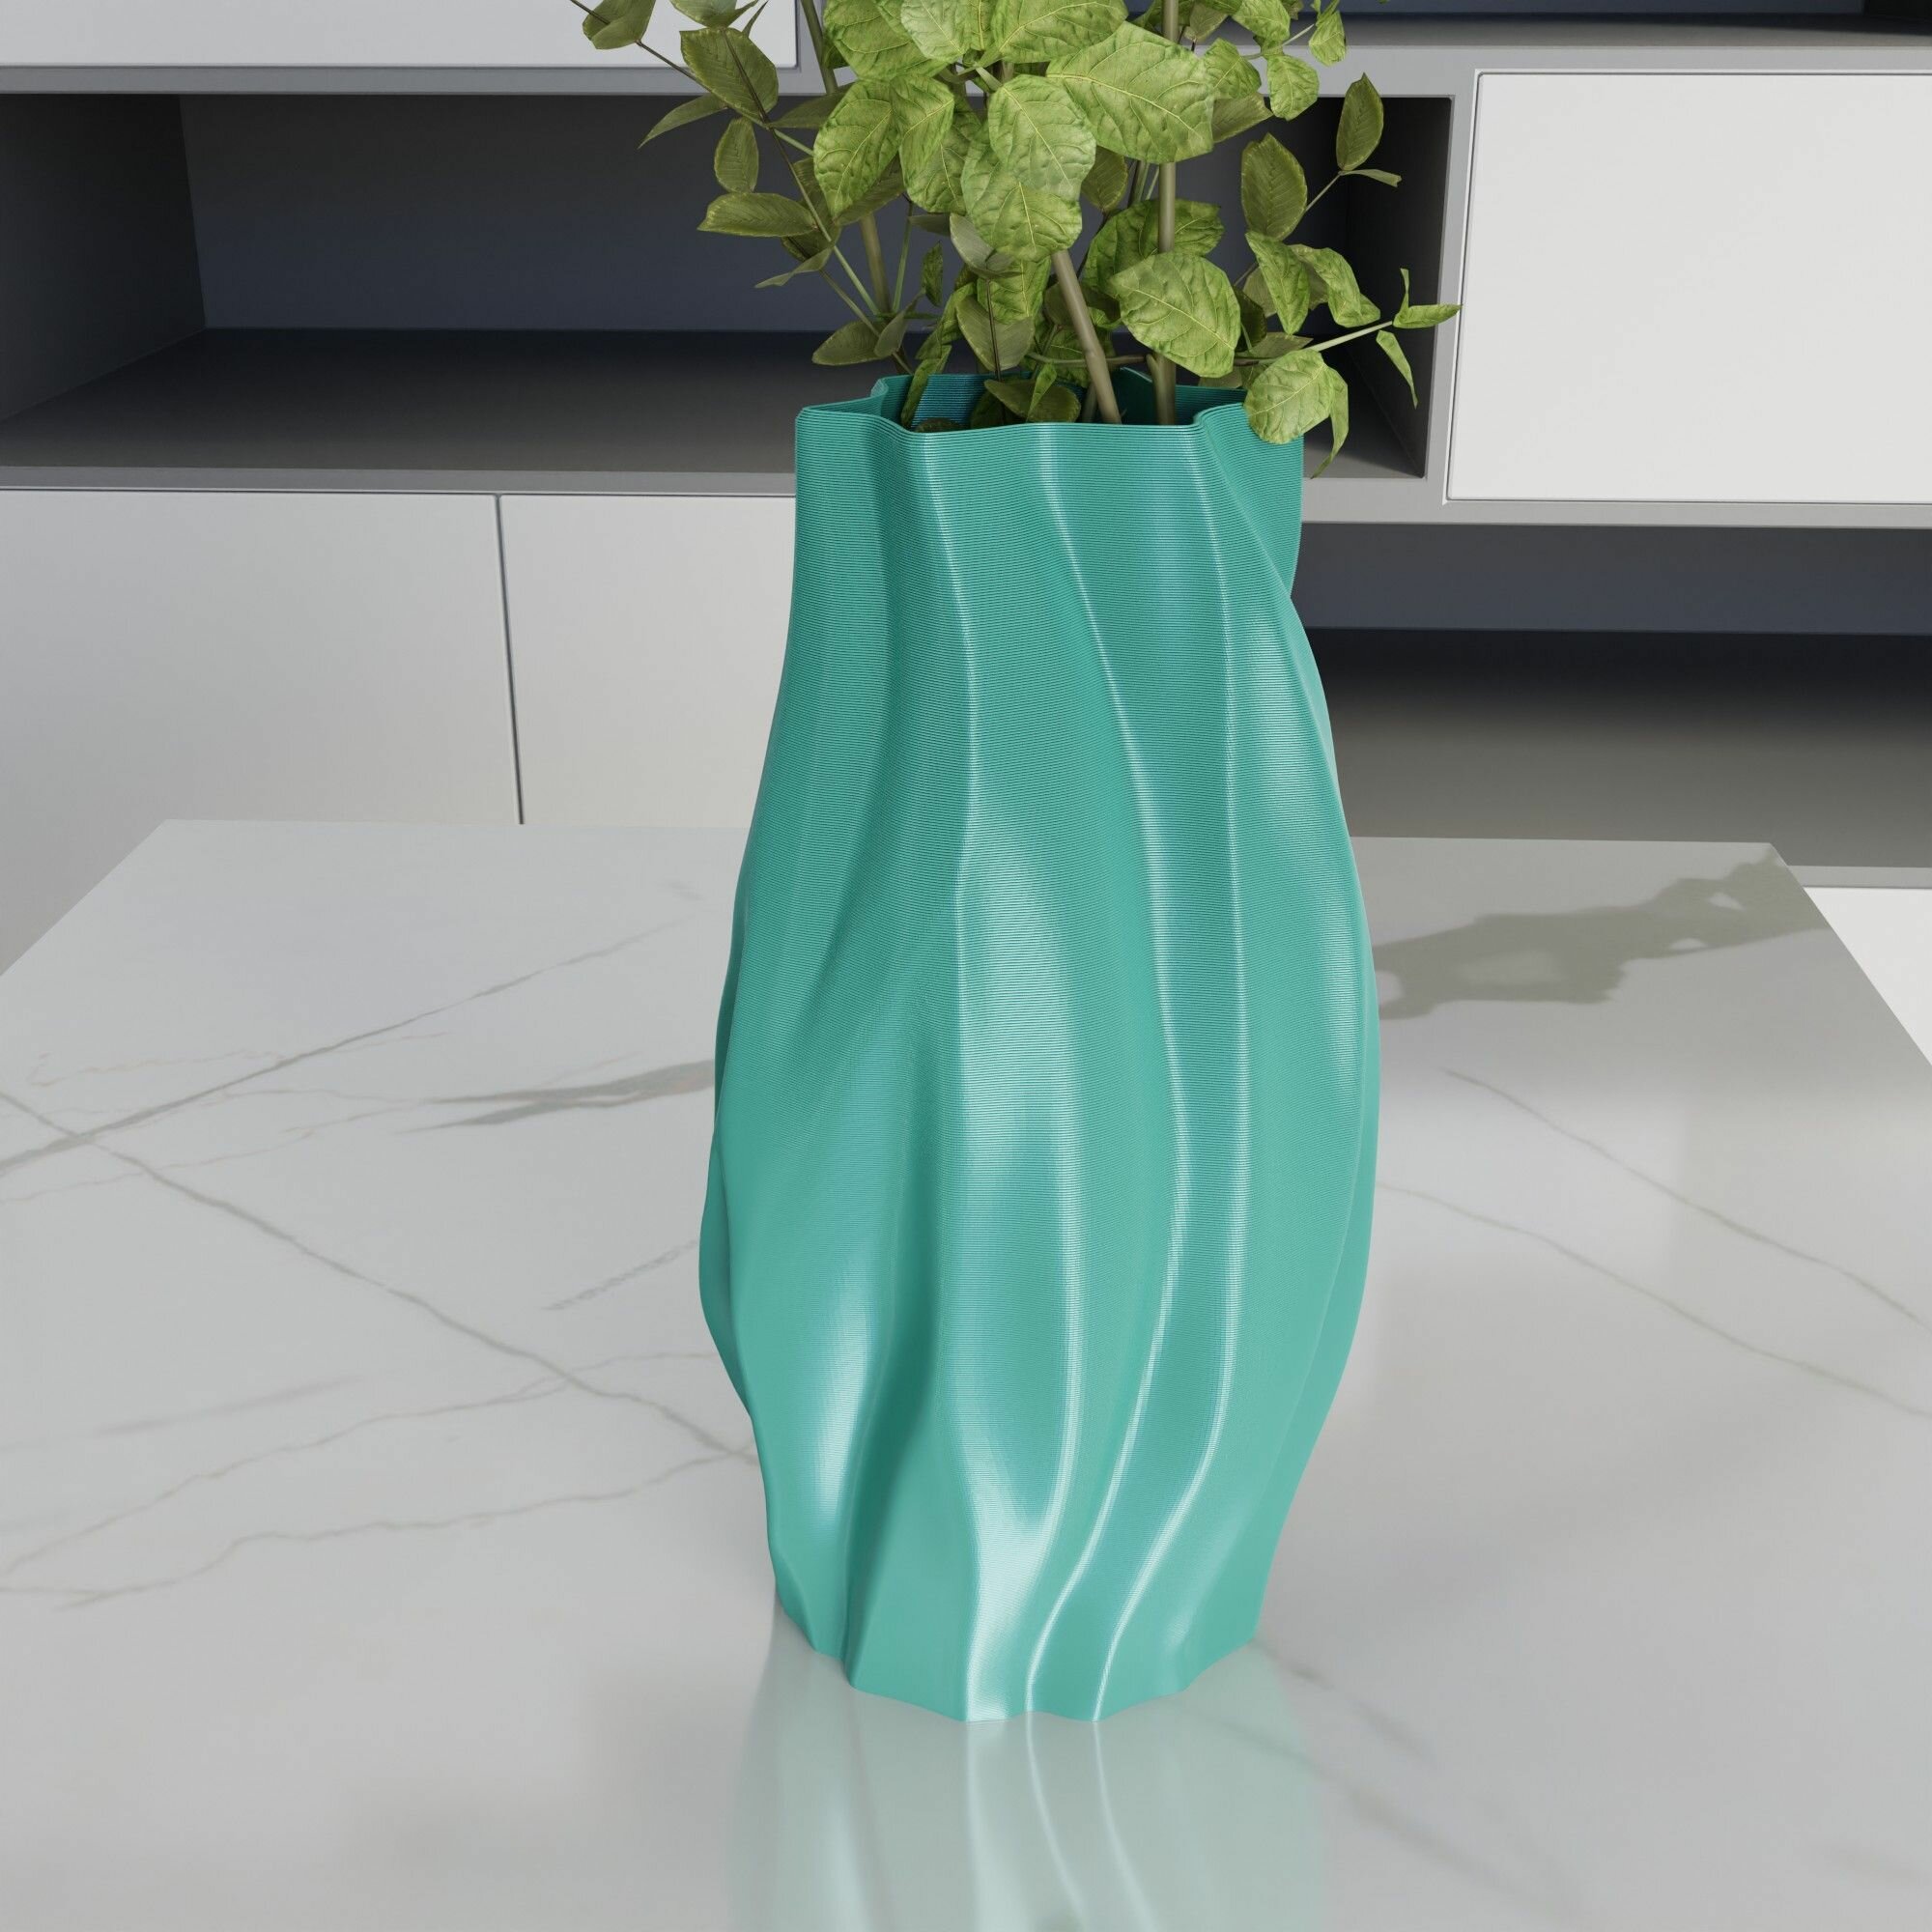 Amorfa Unu Декоративная ваза интерьерная для цветов и сухоцветов